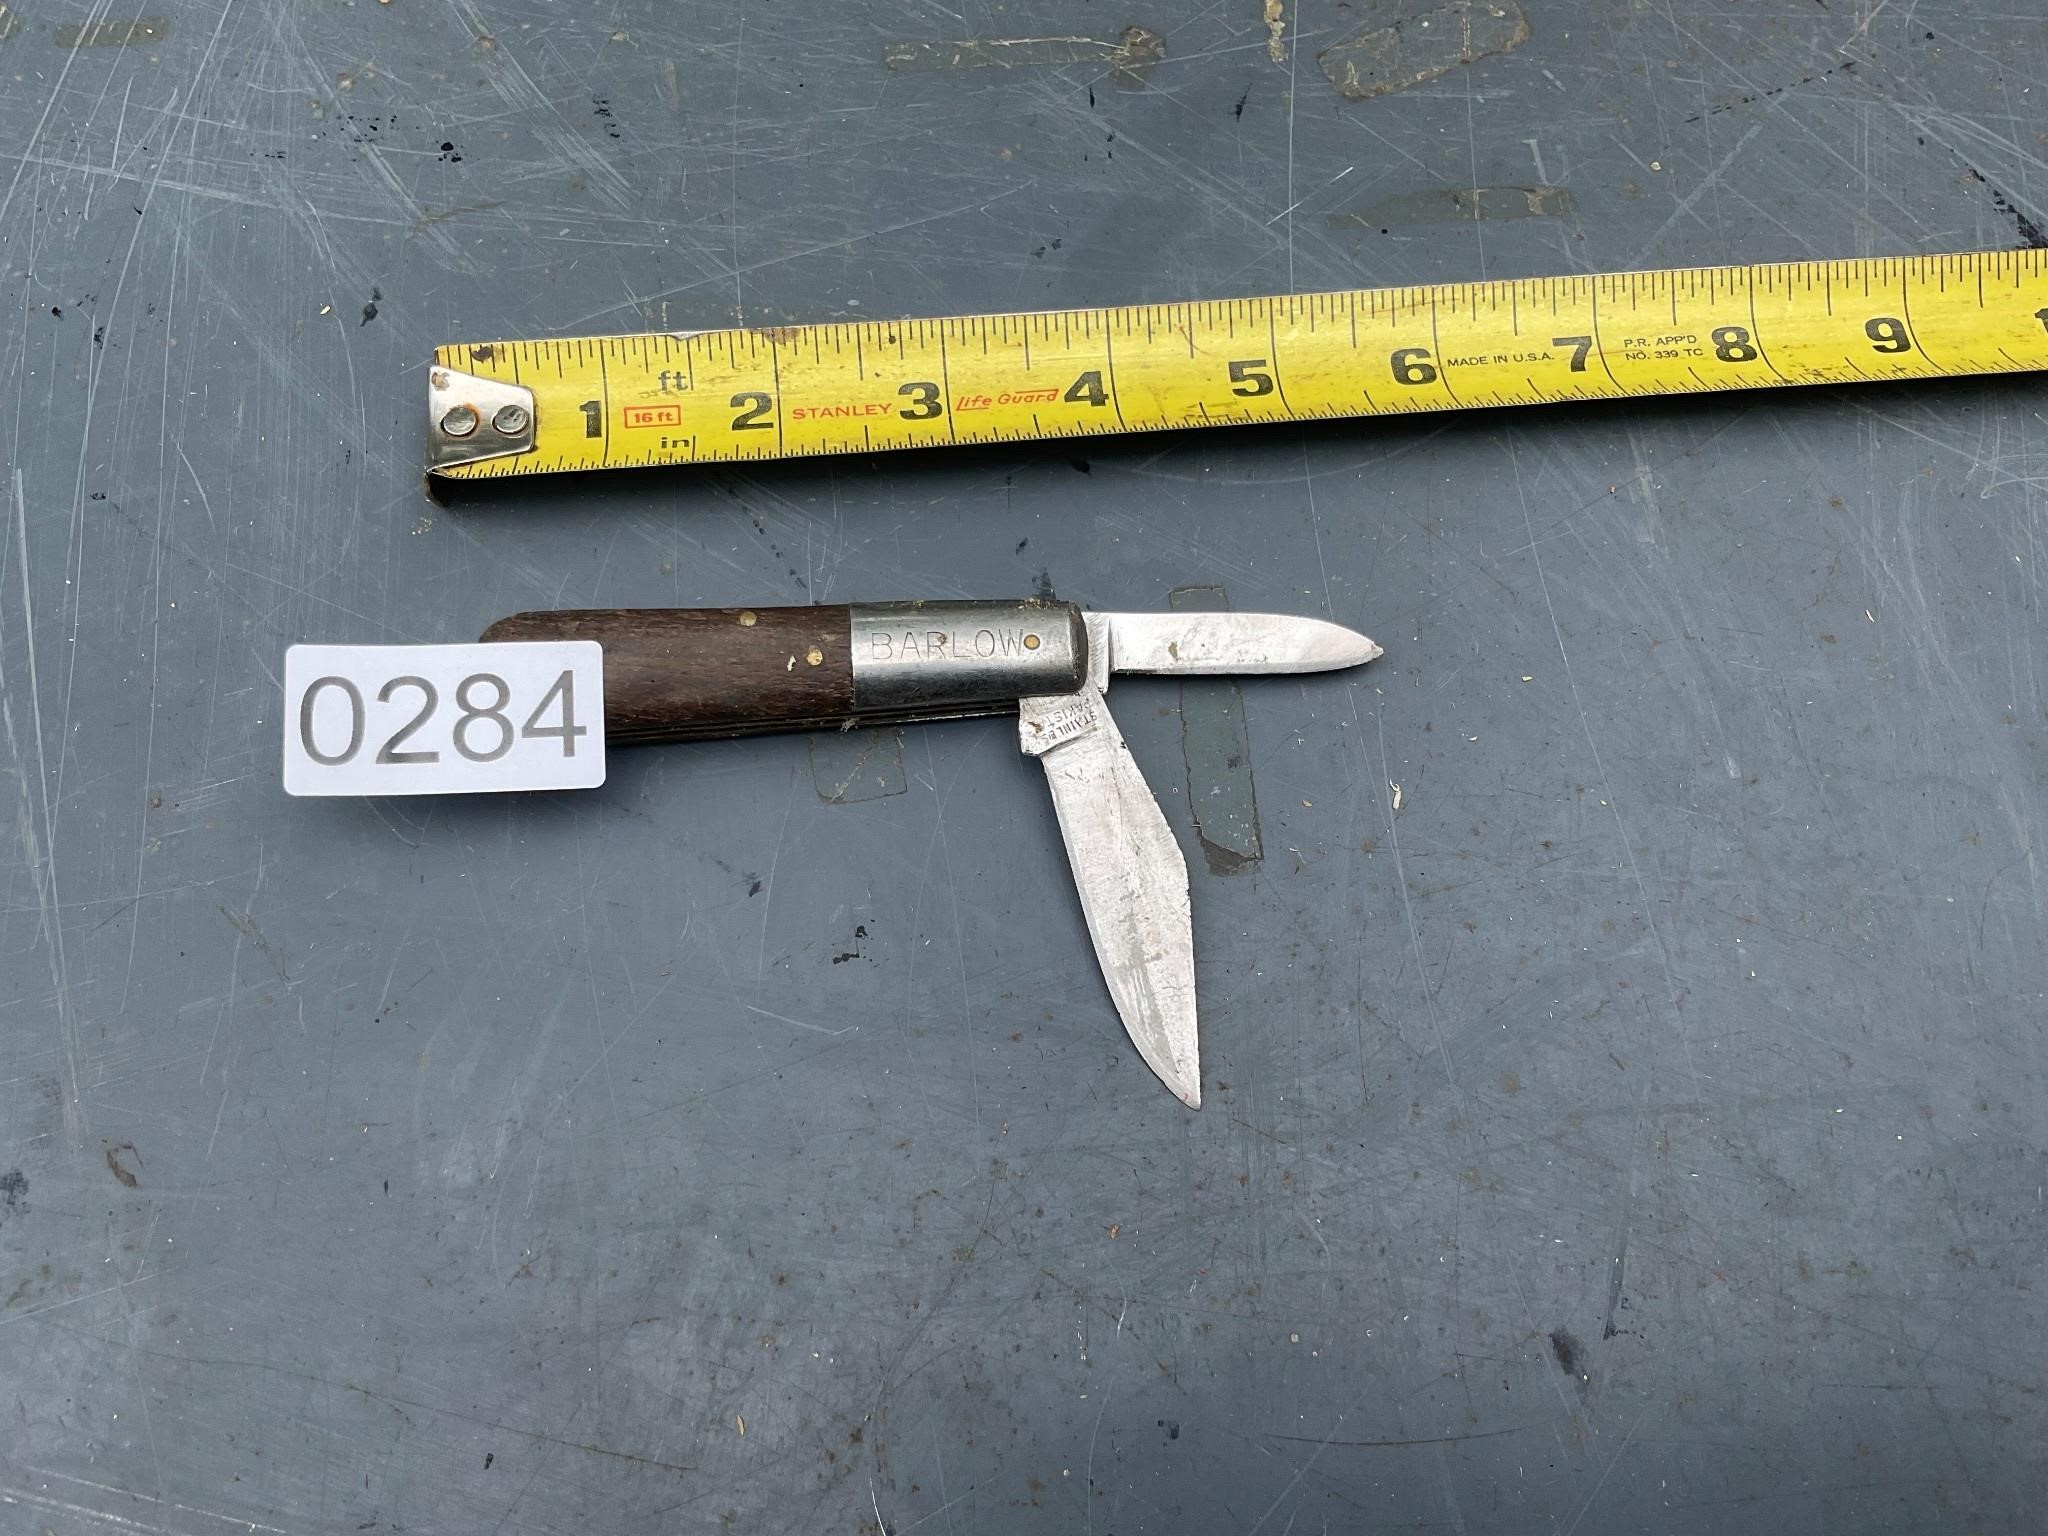 Barlow 2 blade pocket knife